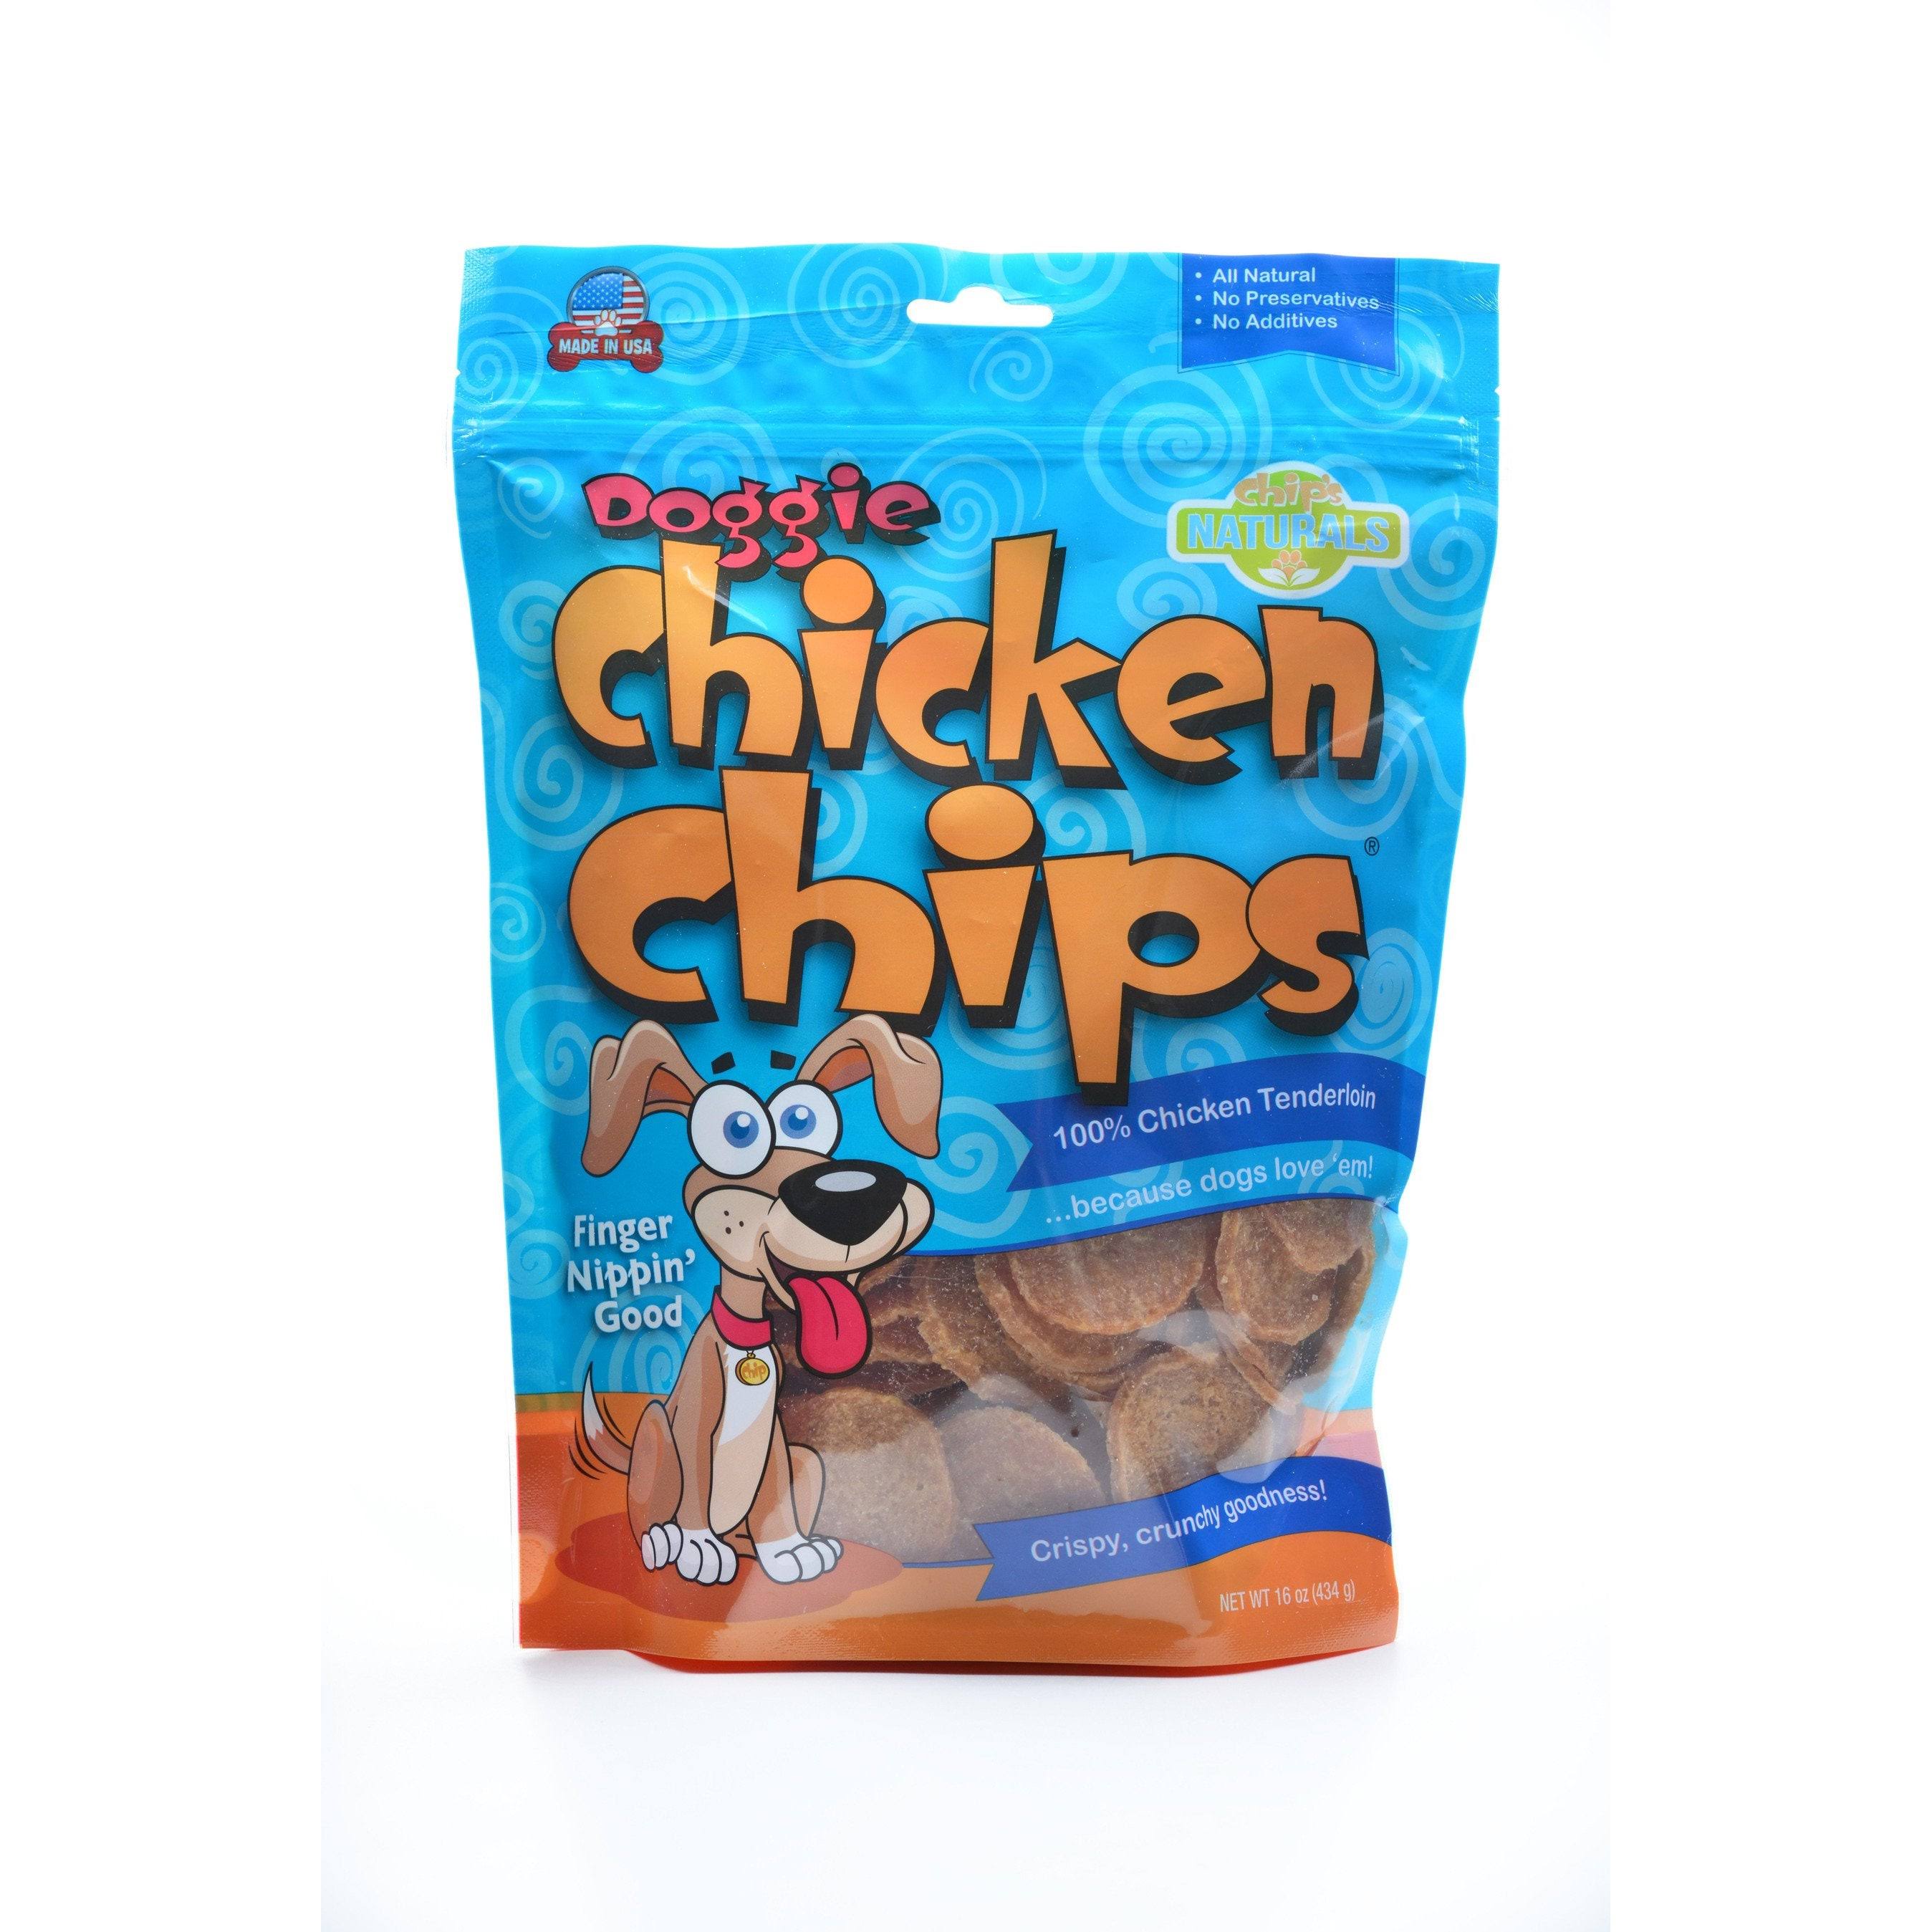 Doggie Chicken Chips Dog Treats 16 oz